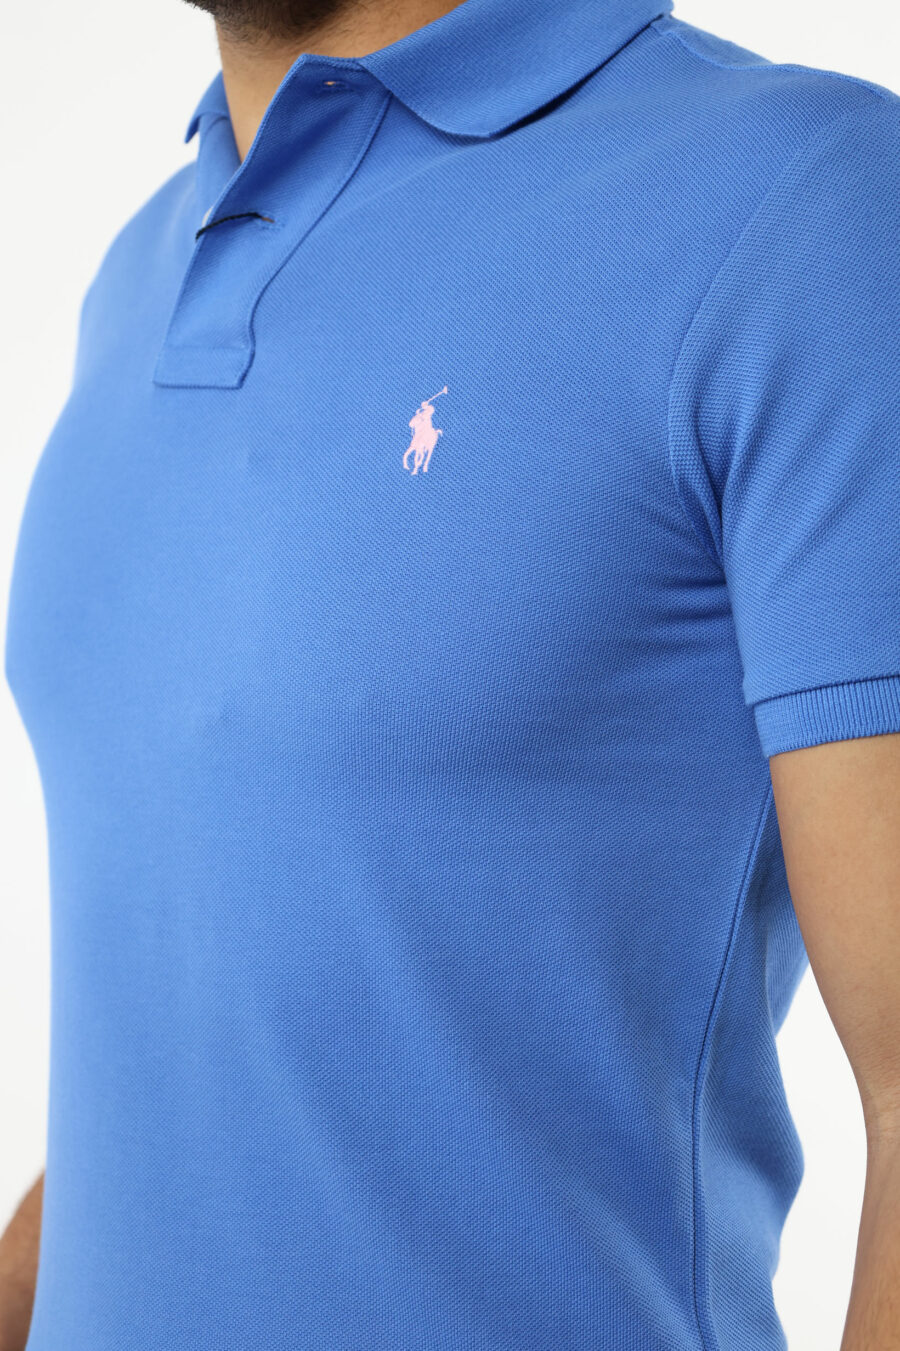 T-shirt bleu et rose avec mini-logo "polo" - 111231